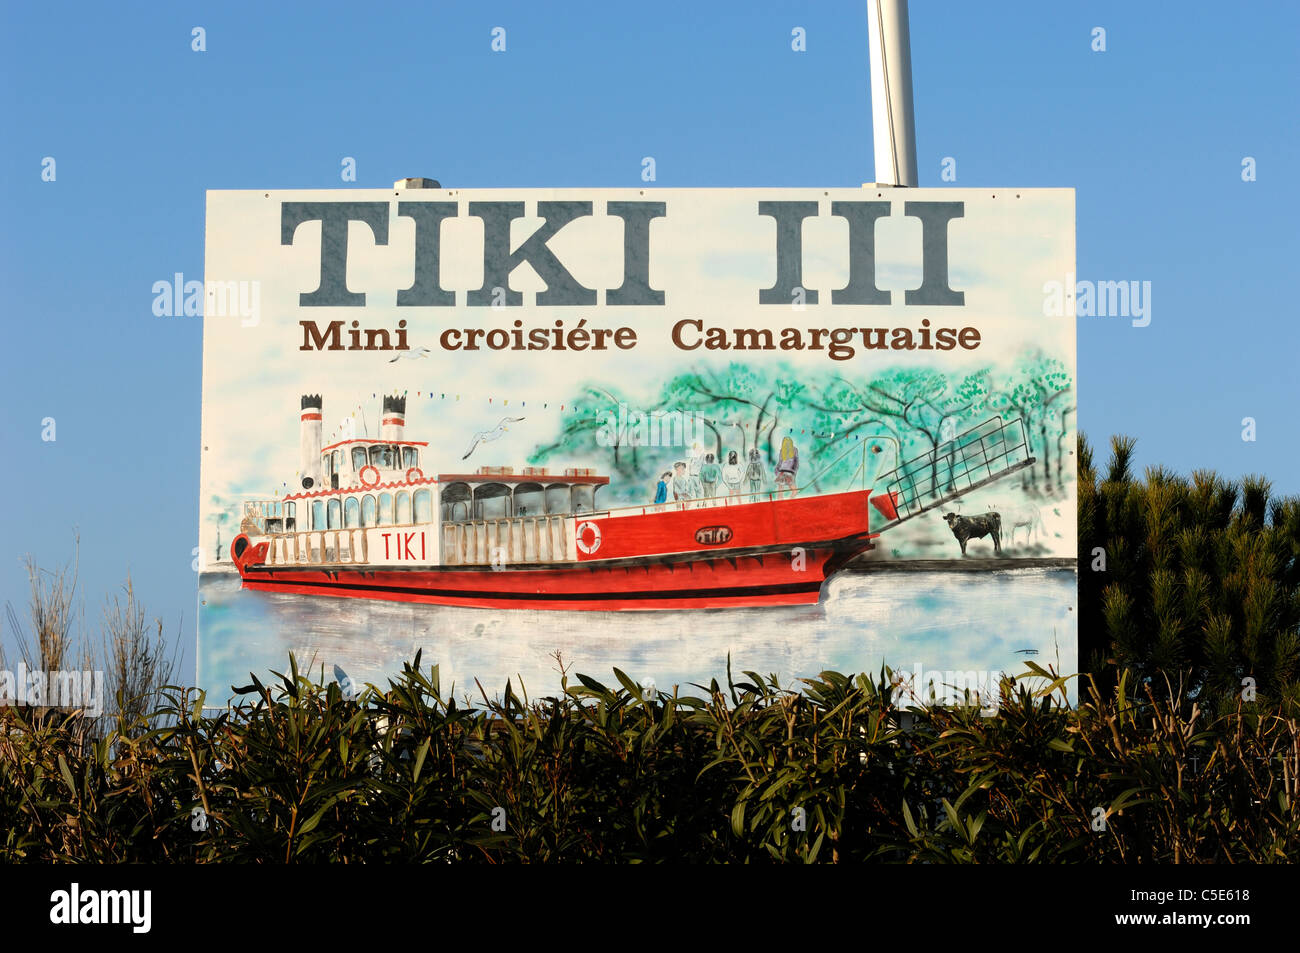 Publicité, Publicité ou panneau pour une excursion en bateau à aubes Steamer, Cruiser ou bateau de croisière sur le Rhône, les Saintes-Maries-de-la-Mer, Camargue, Provence Banque D'Images